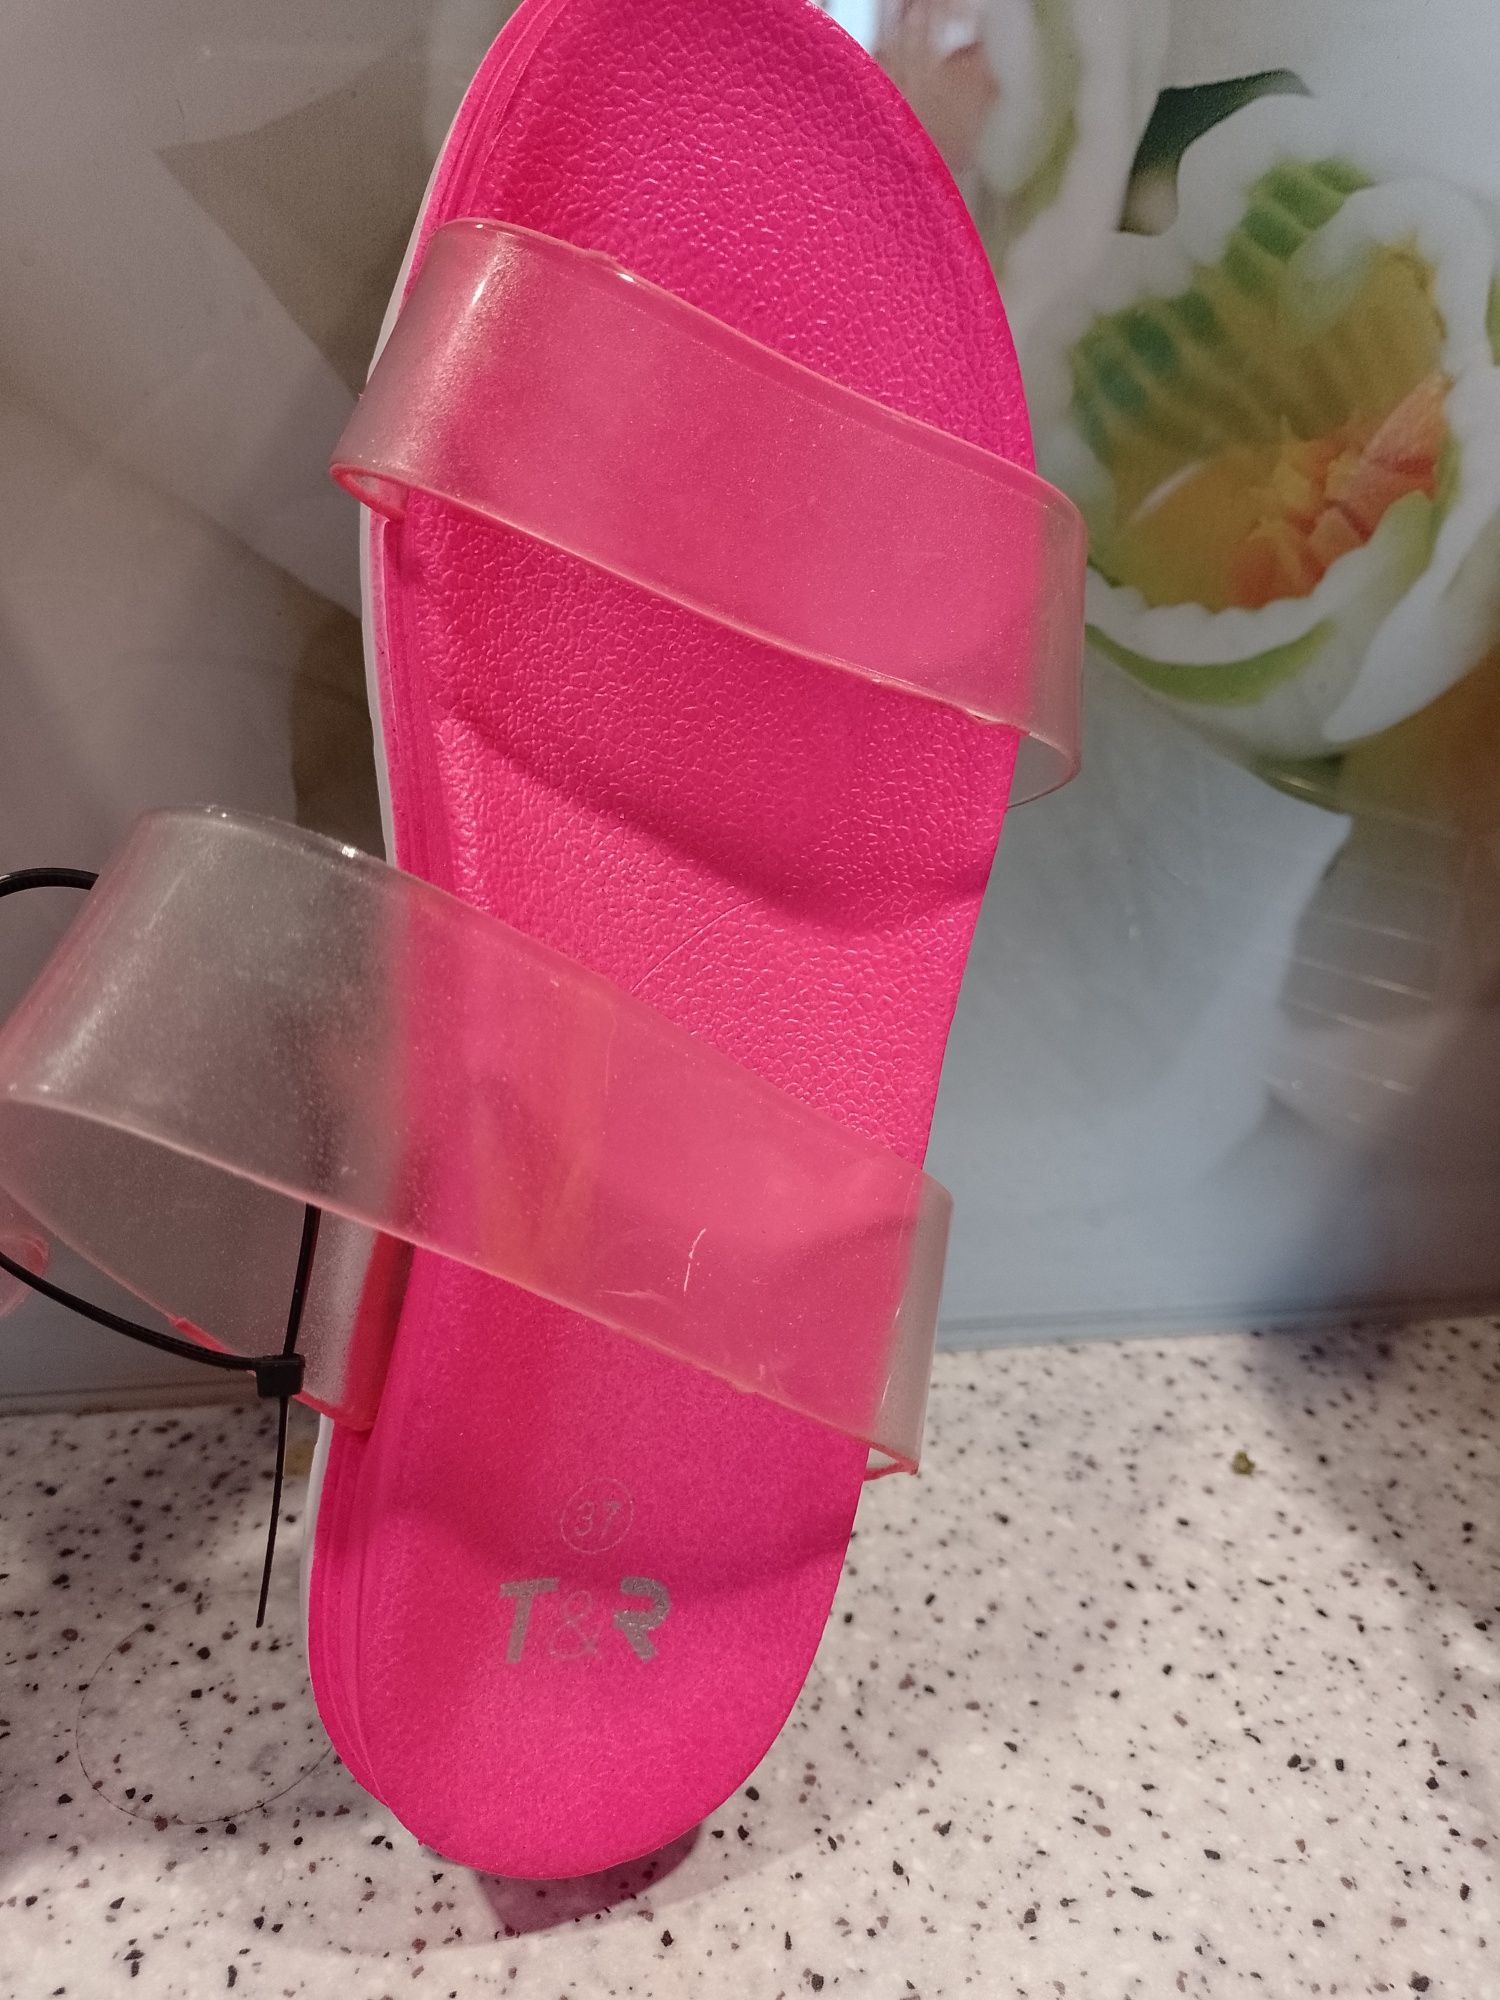 Nowe klapki różowo białe r. 37 / 23.5 cm